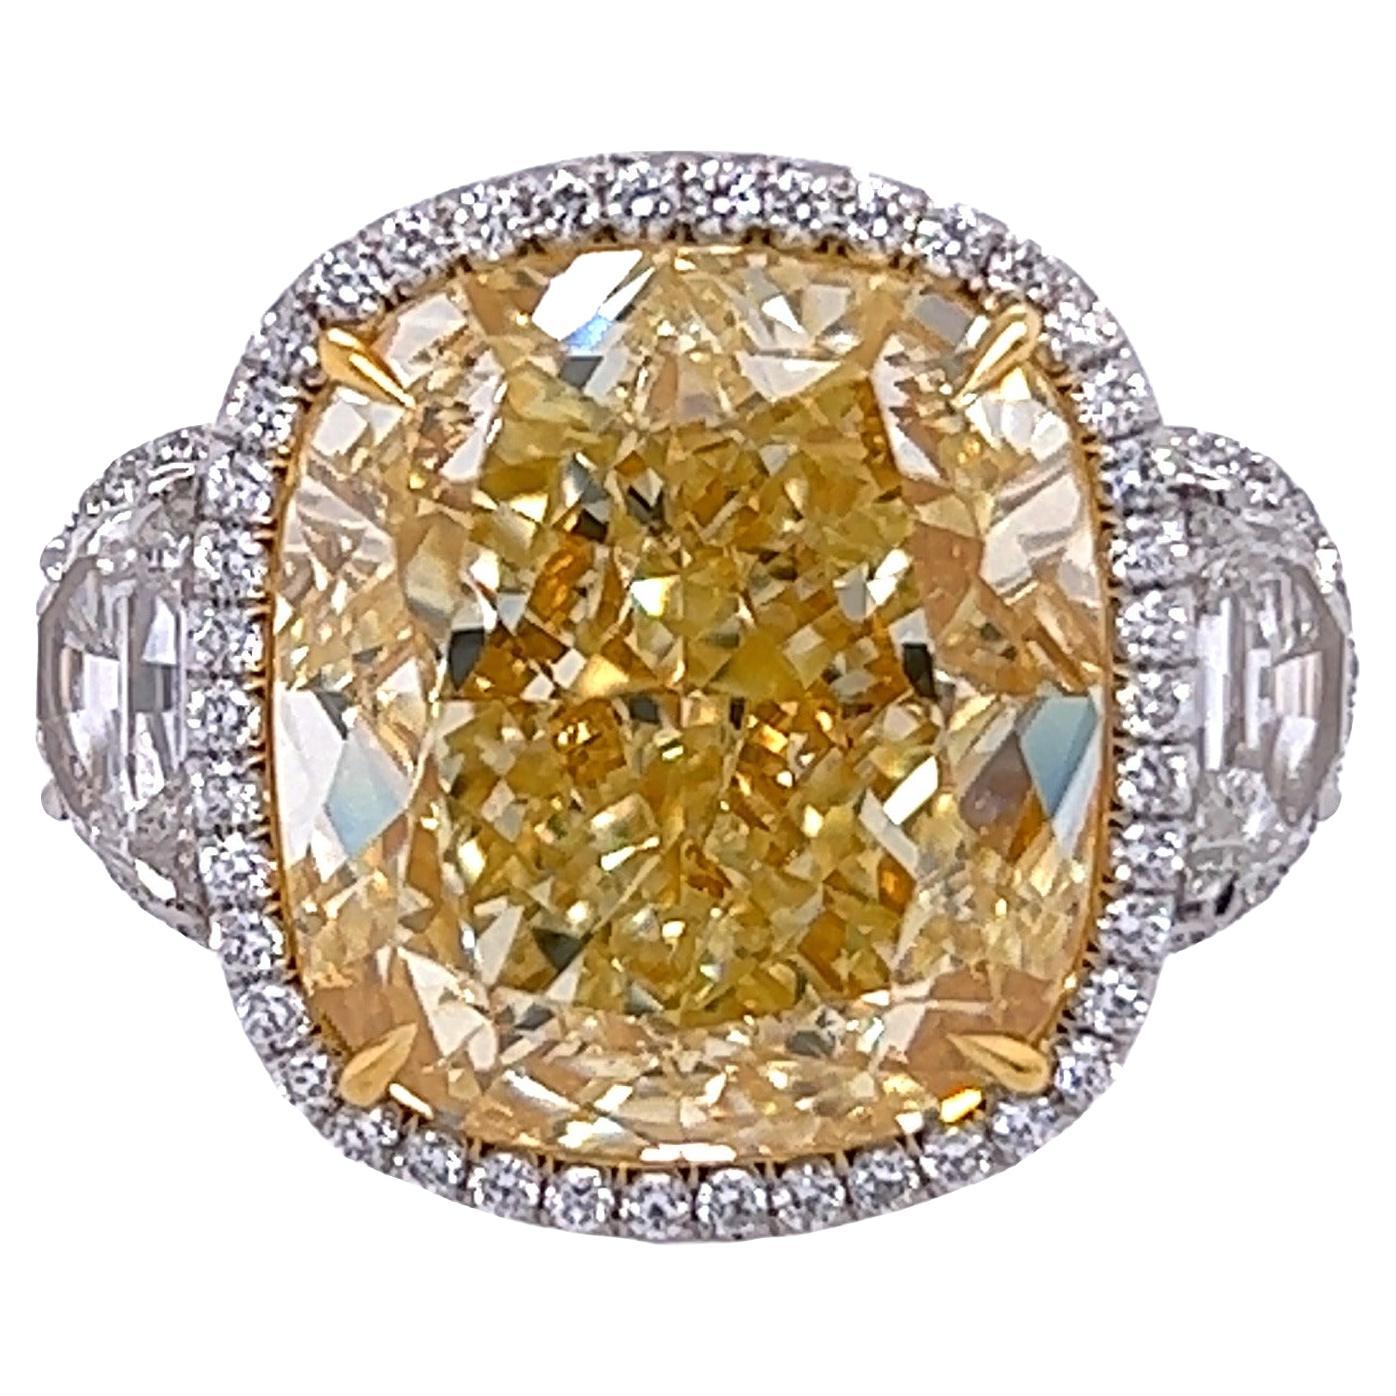 David Rosenberg 16.06 Carat Cushion Cut Fancy Yellow GIA Diamond Engagement Ring